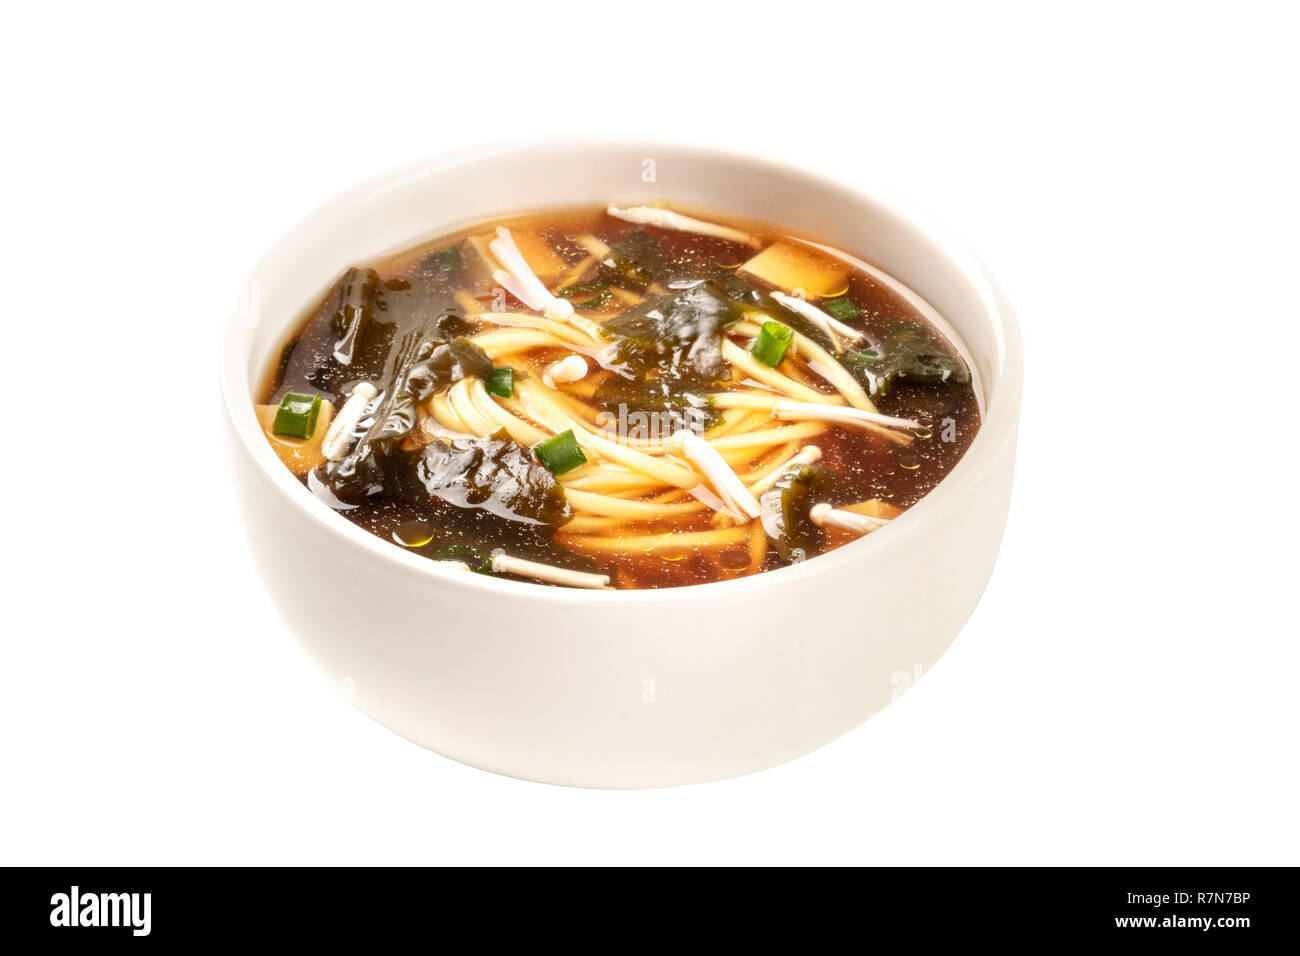 Une photo d'un bol de soupe miso avec le tofu, les oignons verts, les nouilles, les champignons Enoki et wakame, isolé sur un fond blanc avec un chemin de détourage Banque D'Images